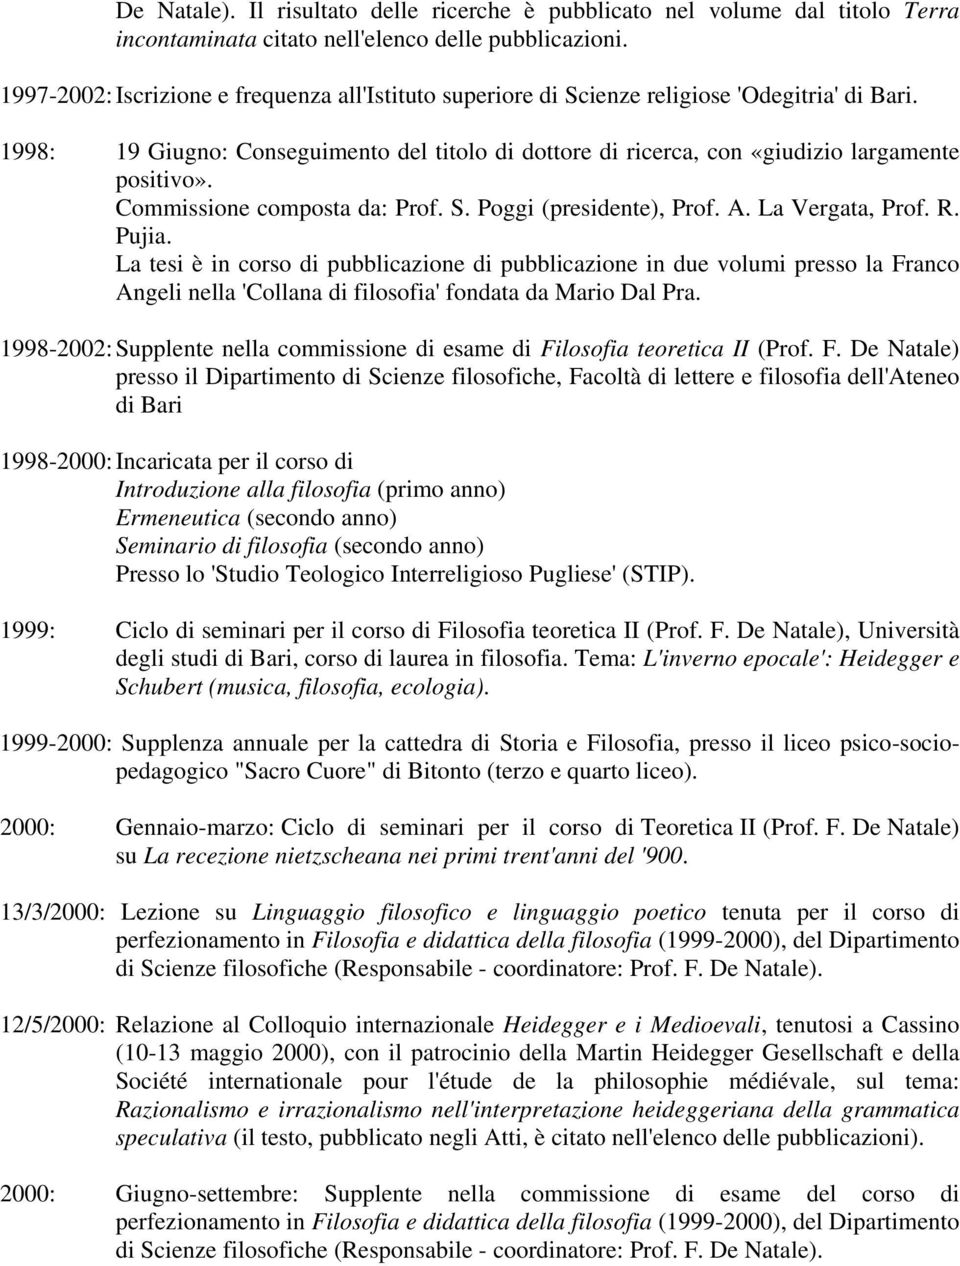 Commissione composta da: Prof. S. Poggi (presidente), Prof. A. La Vergata, Prof. R. Pujia.